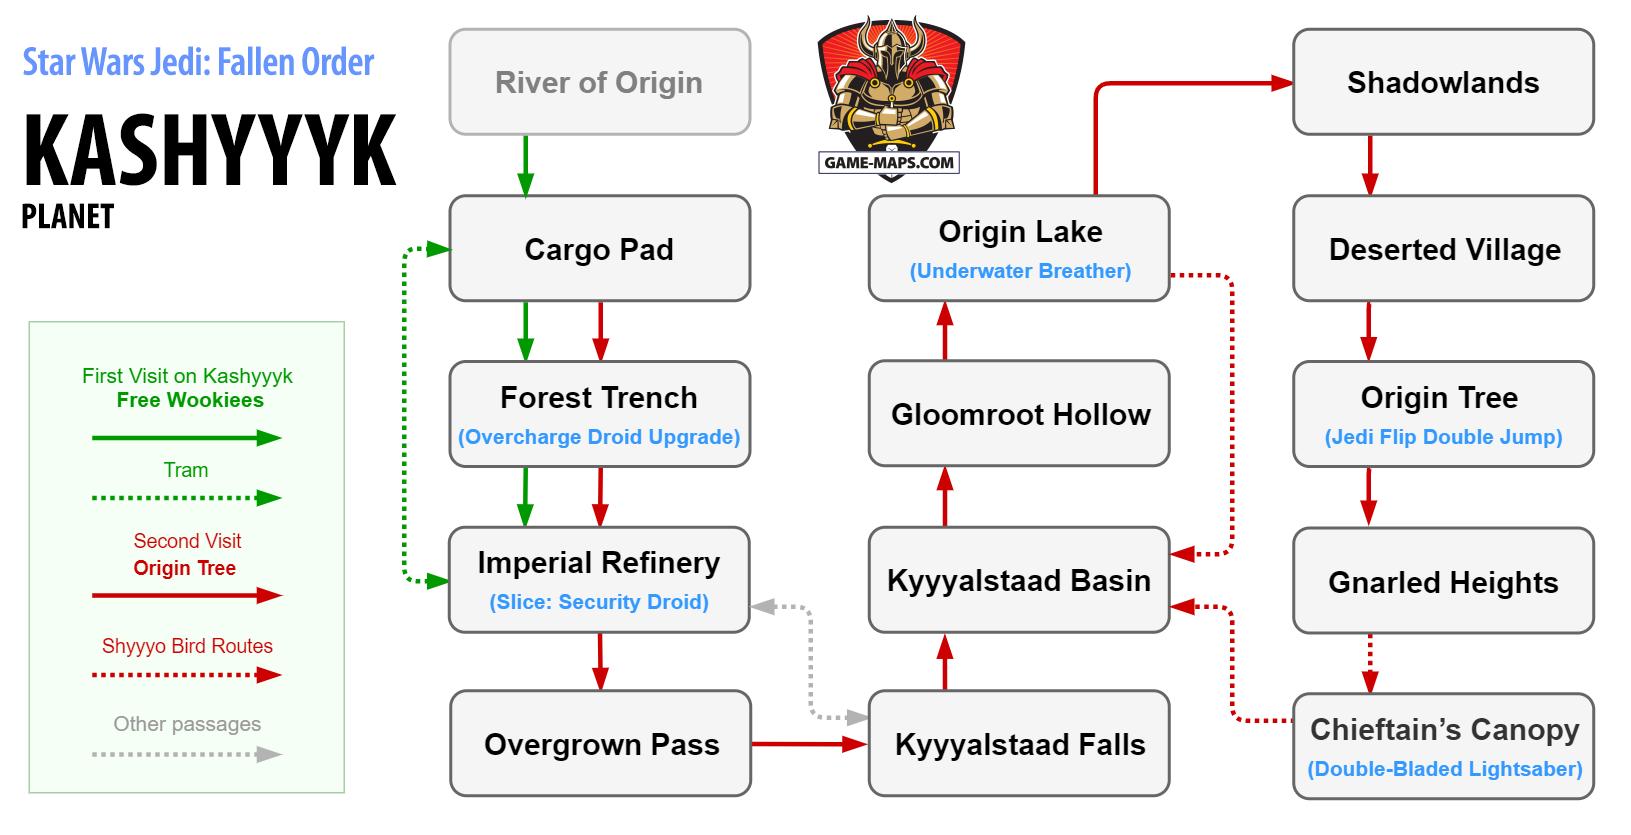 Map of Kashyyyk - Jedi Fallen Order Location diagram on Planet Kashyyyk in Jedi Fallen Order - Star Wars Jedi: Fallen Order